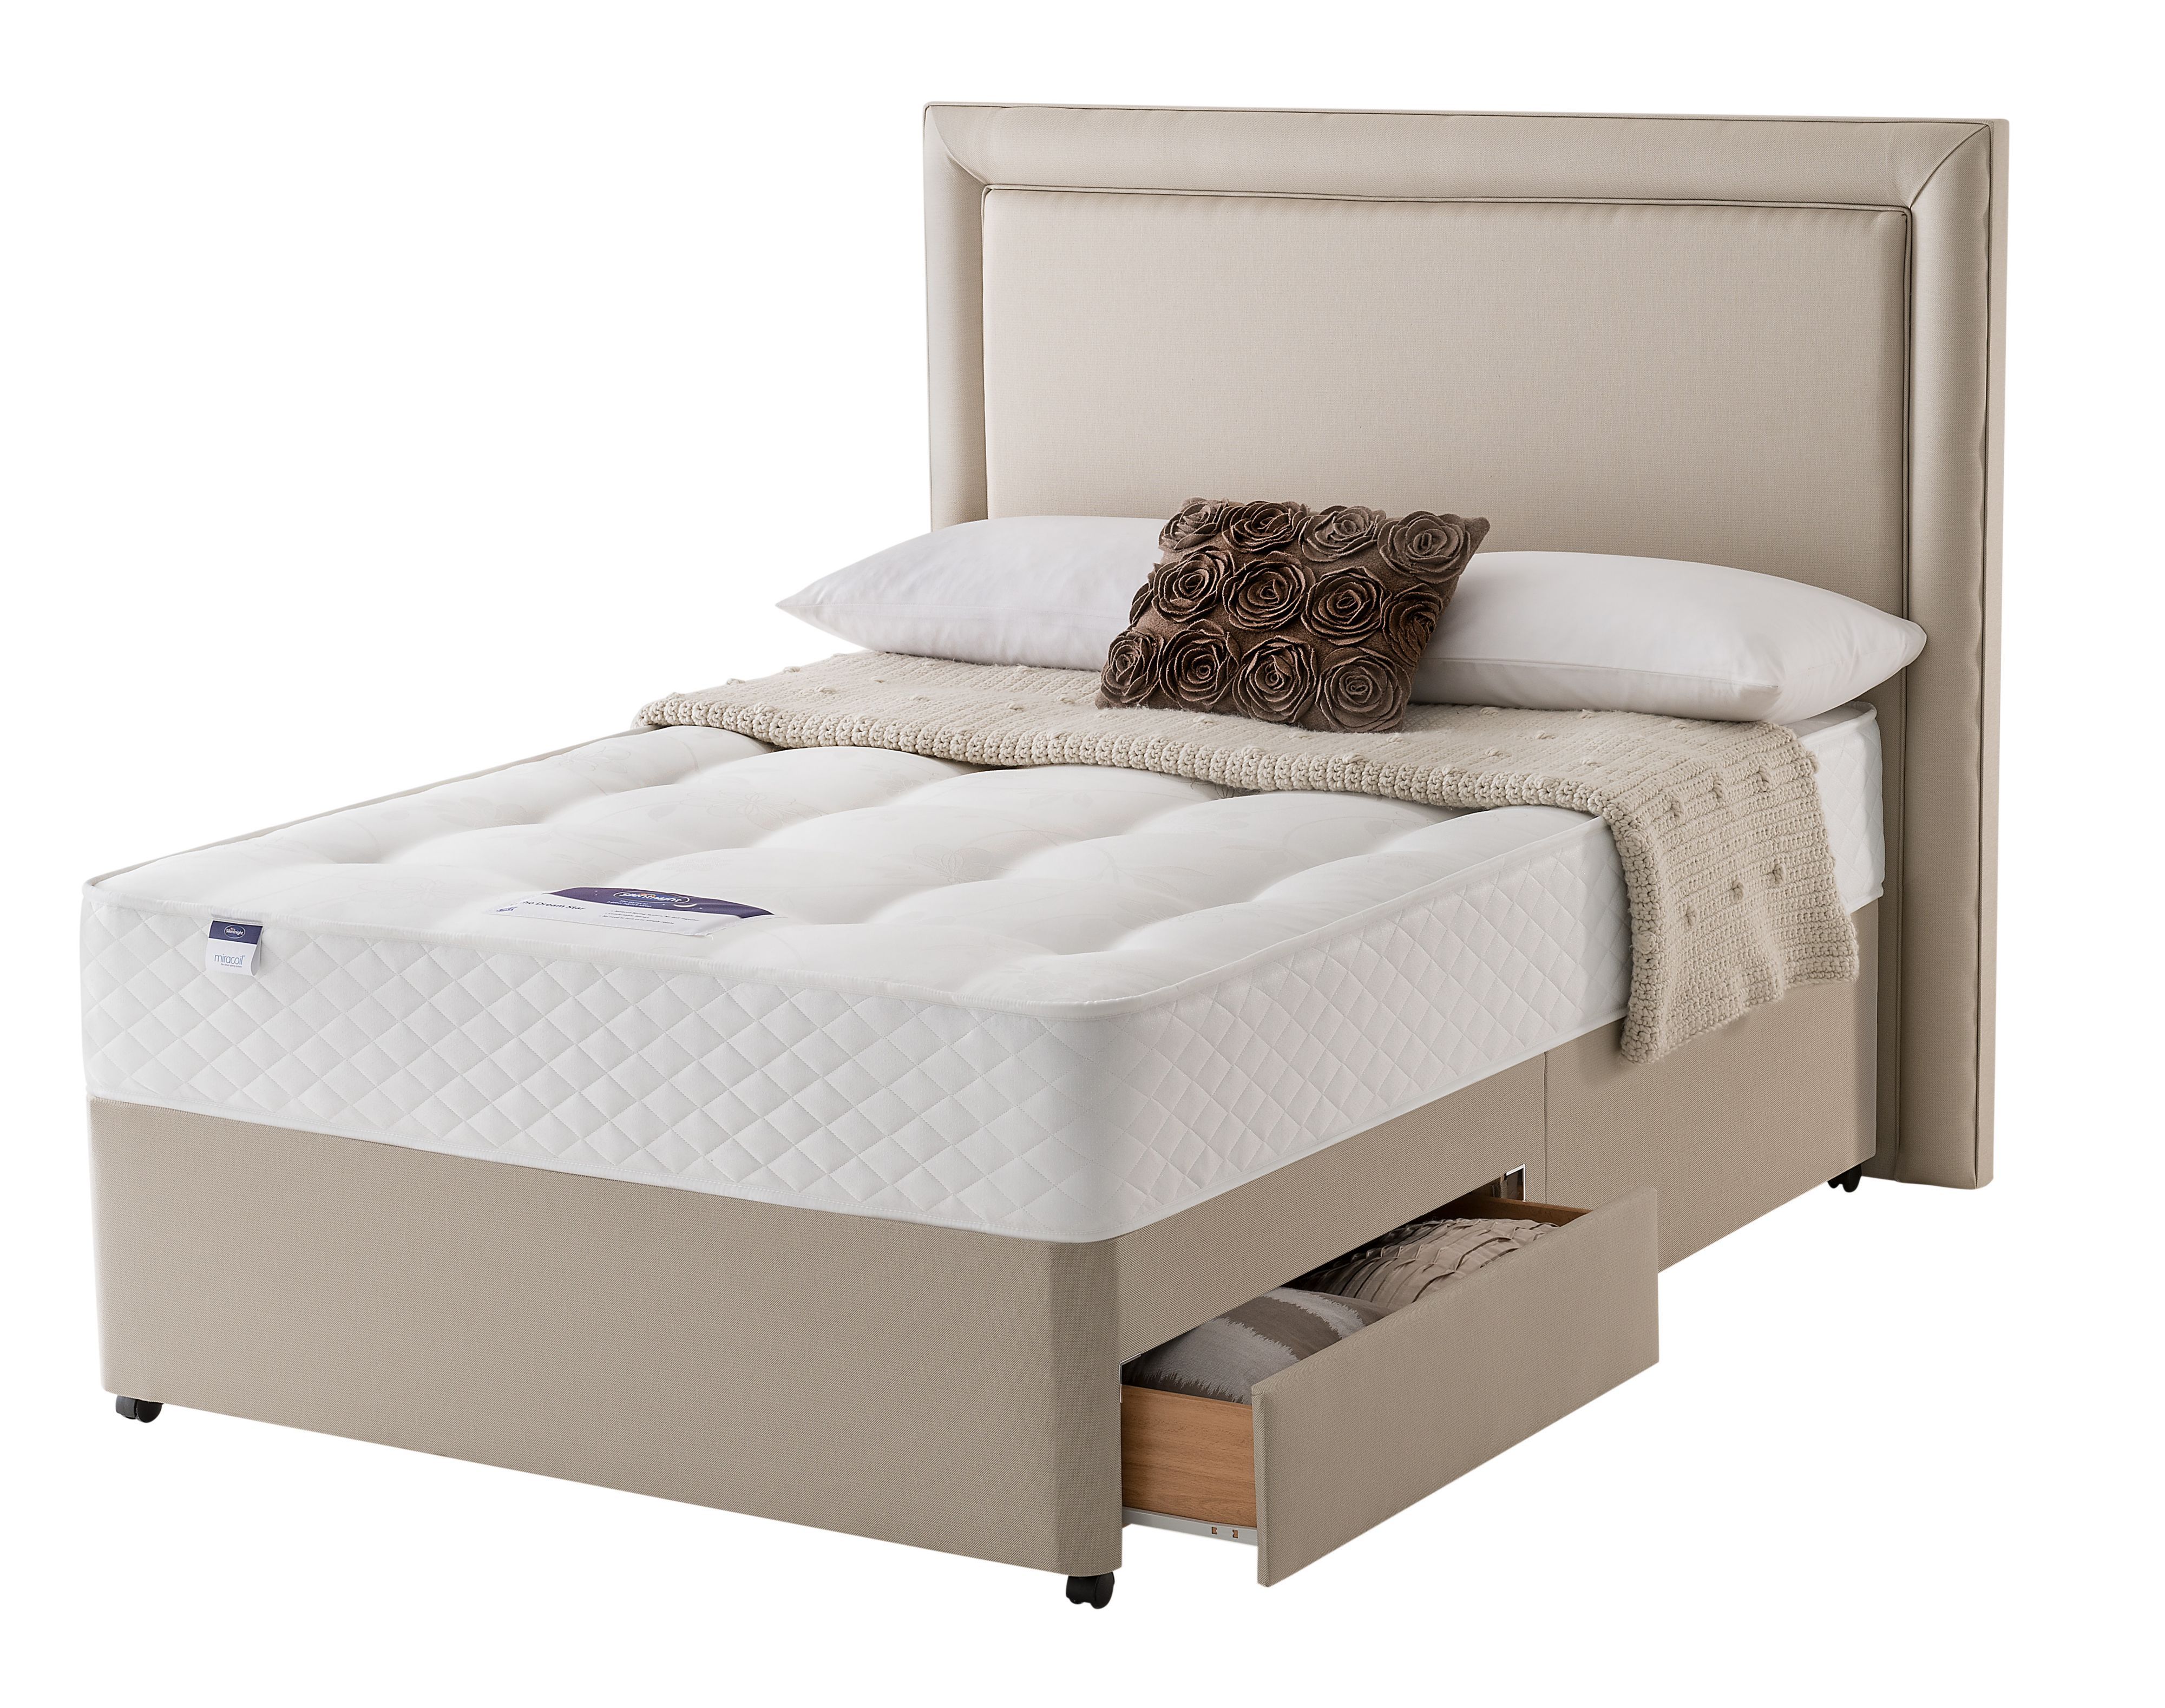 king size divan bed and mattress deals